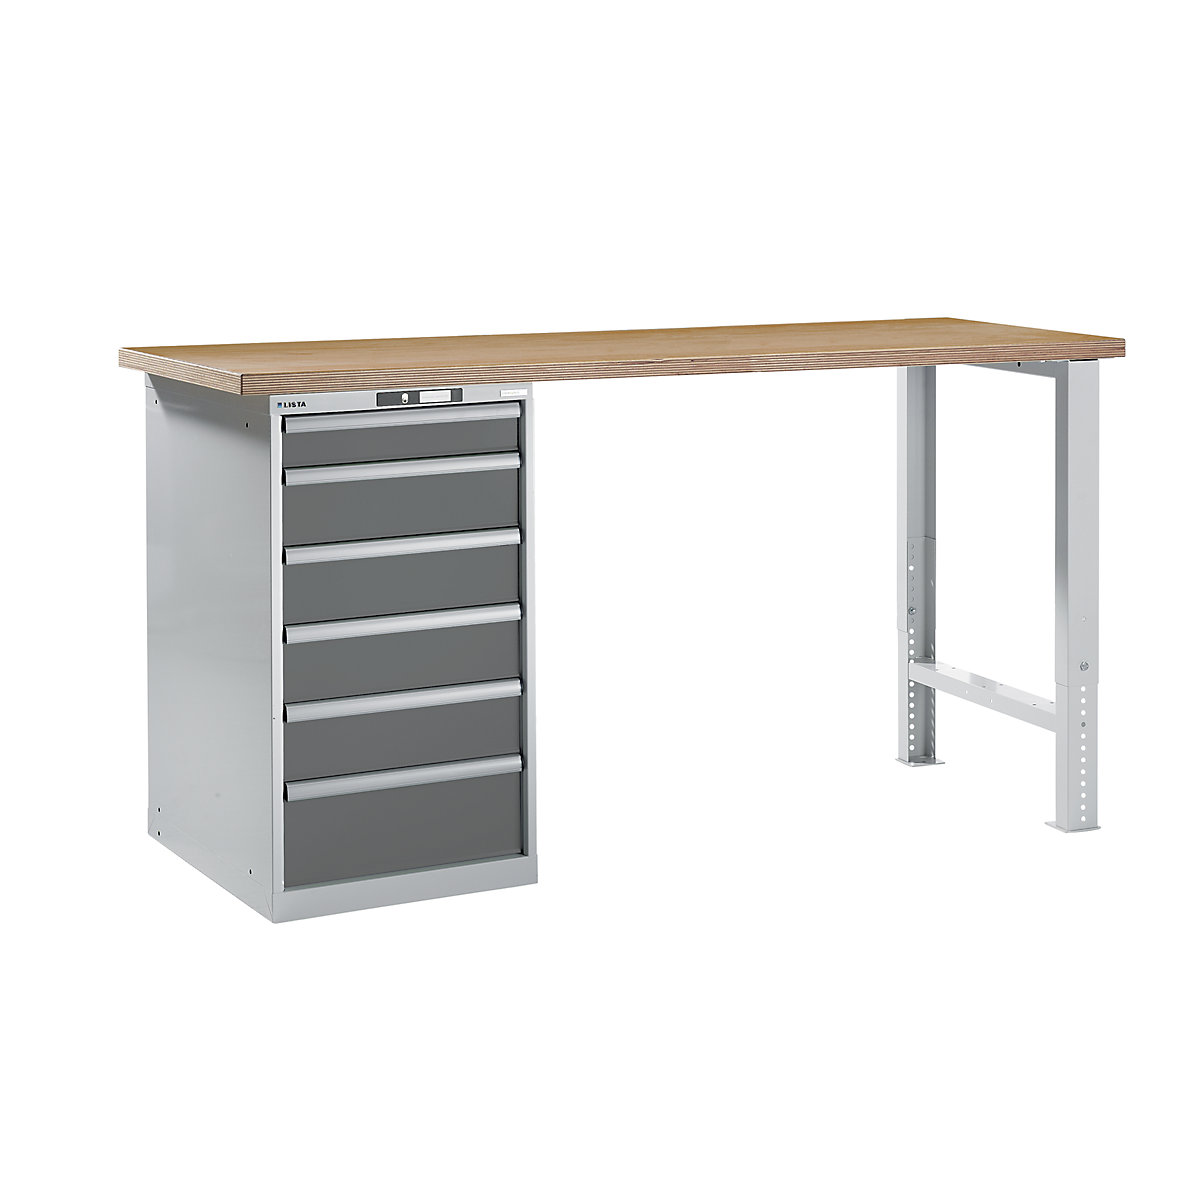 Dílenský stůl ve stavebnicovém systému – LISTA, výška 1040 mm, podstavná skříňka, 6 zásuvky, šedá metalíza, šířka stolu 2000 mm-3